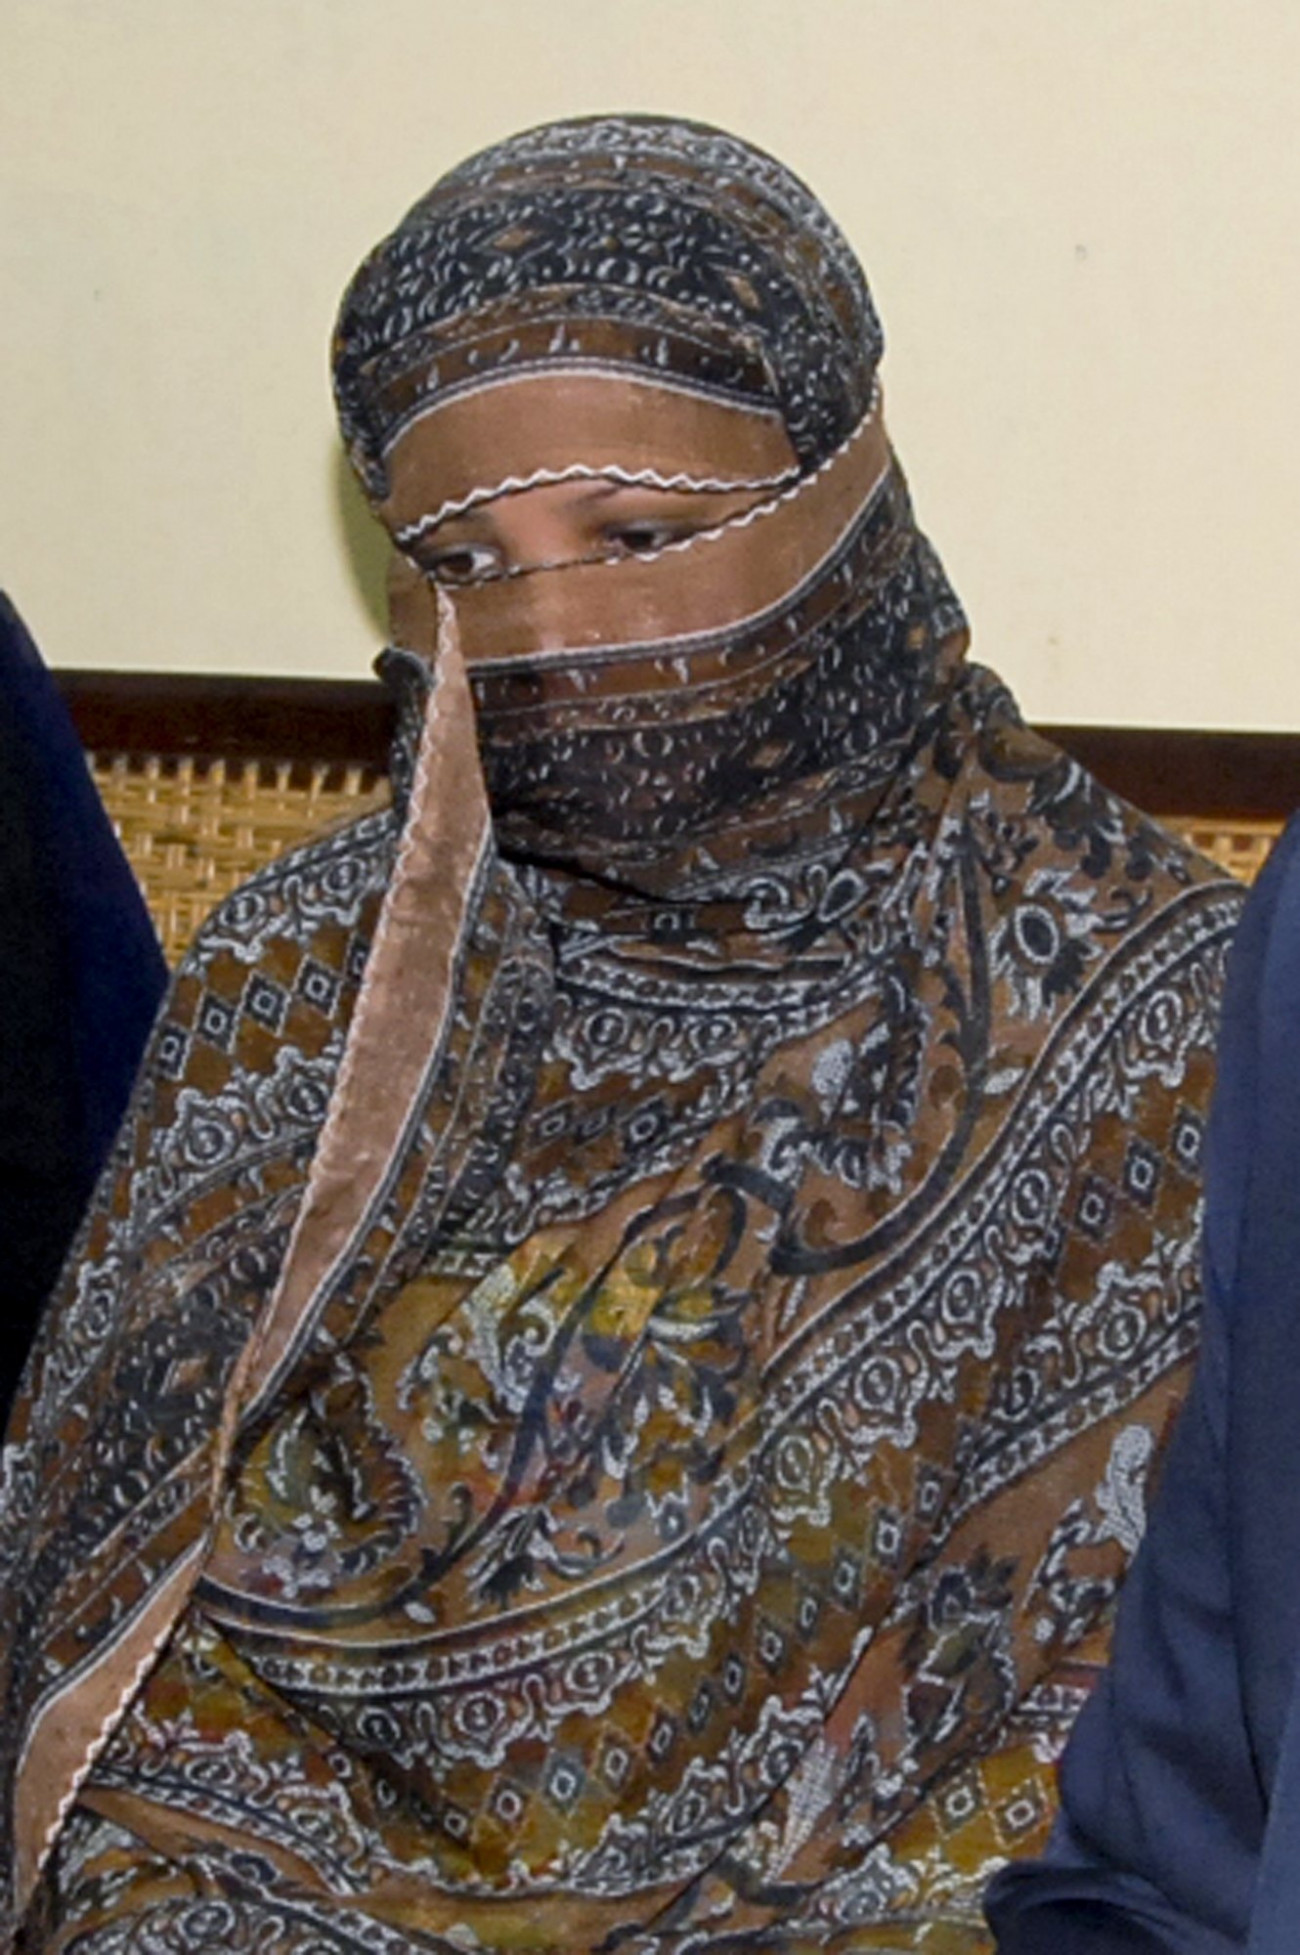 Sejkupura, 2018. október 31.
2010. november 20-i felvétel Ászija Bibi pakisztáni keresztény nőről a Lahor közelében levő Sejkupura börtönében. A pakisztáni legfelsőbb bíróság 2018. október 31-én eltörölte az istenkáromlásért halálra ítélt nő ítéletét, heves tiltakozást kiváltva ezzel a pakisztáni radikális iszlamista szimpatizánsokból. Ászija Bibit 2010 novemberében ítélték halálra Pandzsáb tartományban, miután a négy gyereket nevelő keresztény nőt muszlim kolléganői azzal vádolták meg egy vallási vezető előtt, hogy tiszteletlenül beszélt Mohamed prófétáról.
MTI/AP